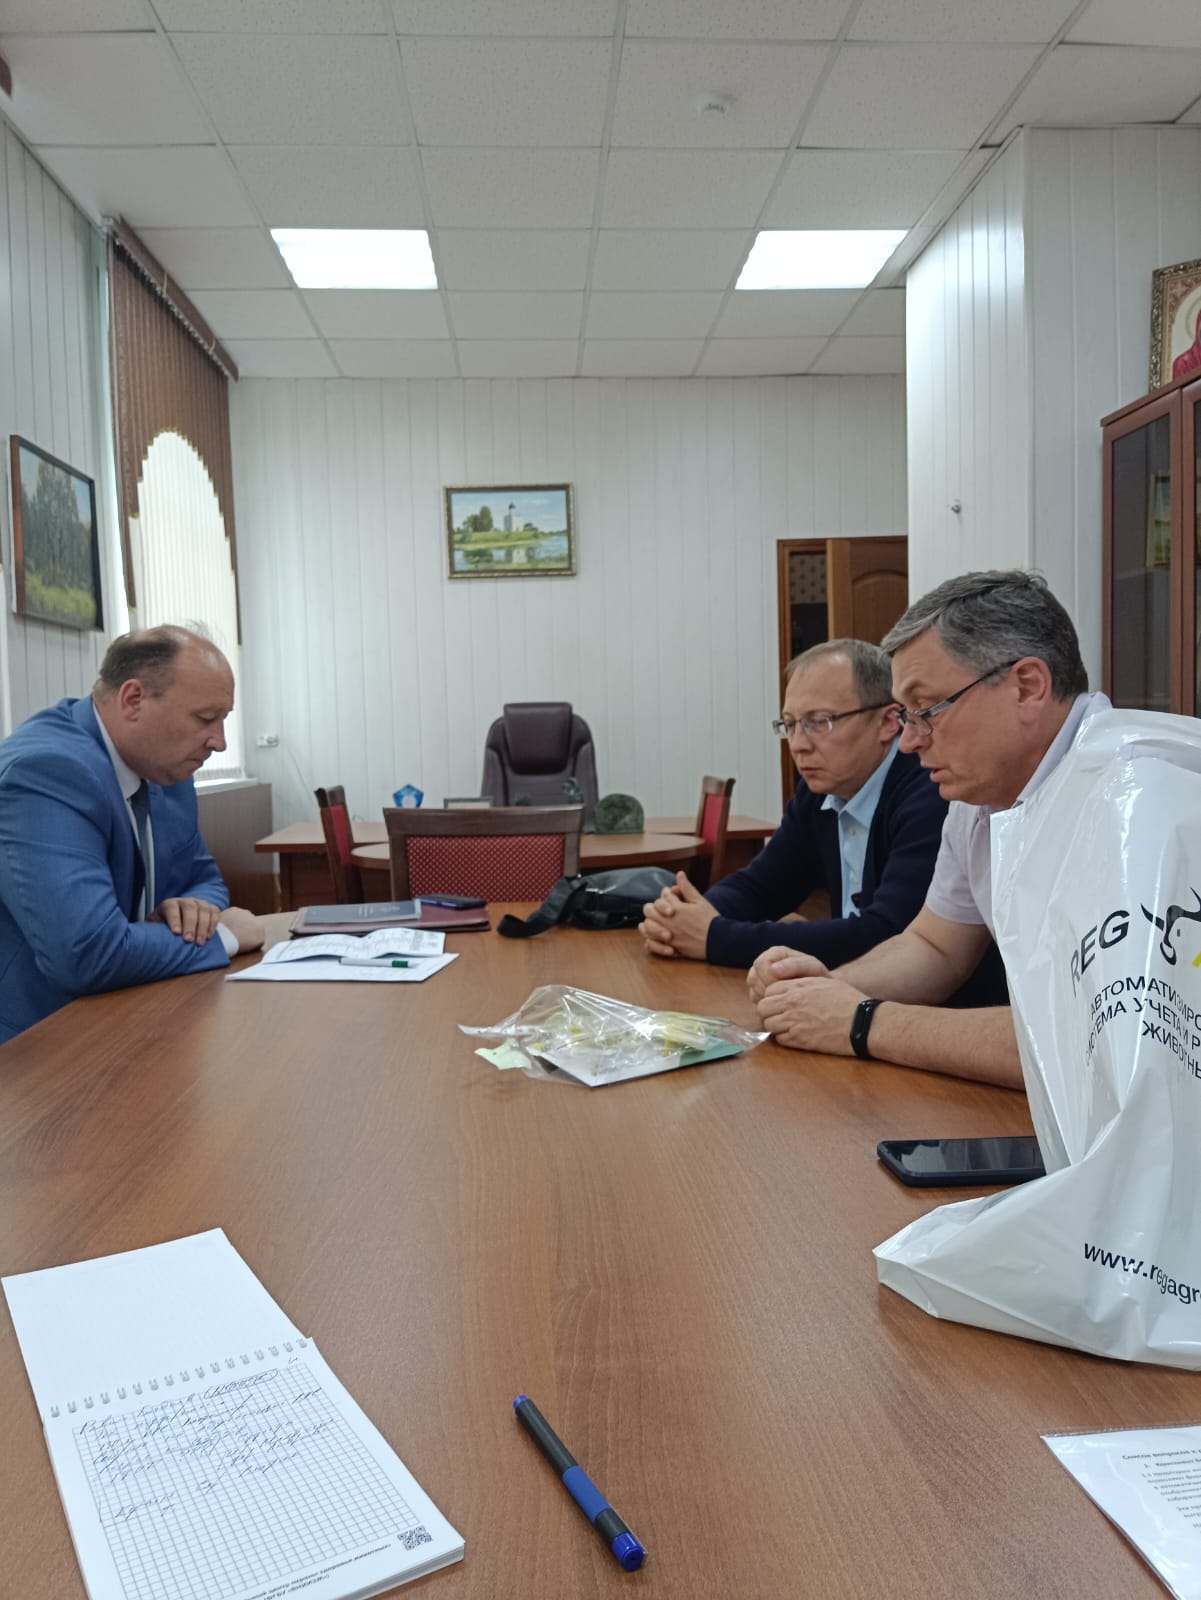 Обсуждение развития регионального АпК: встреча Департамента ветеринарии и представителей компании «Агросервис» прошла во Владимире